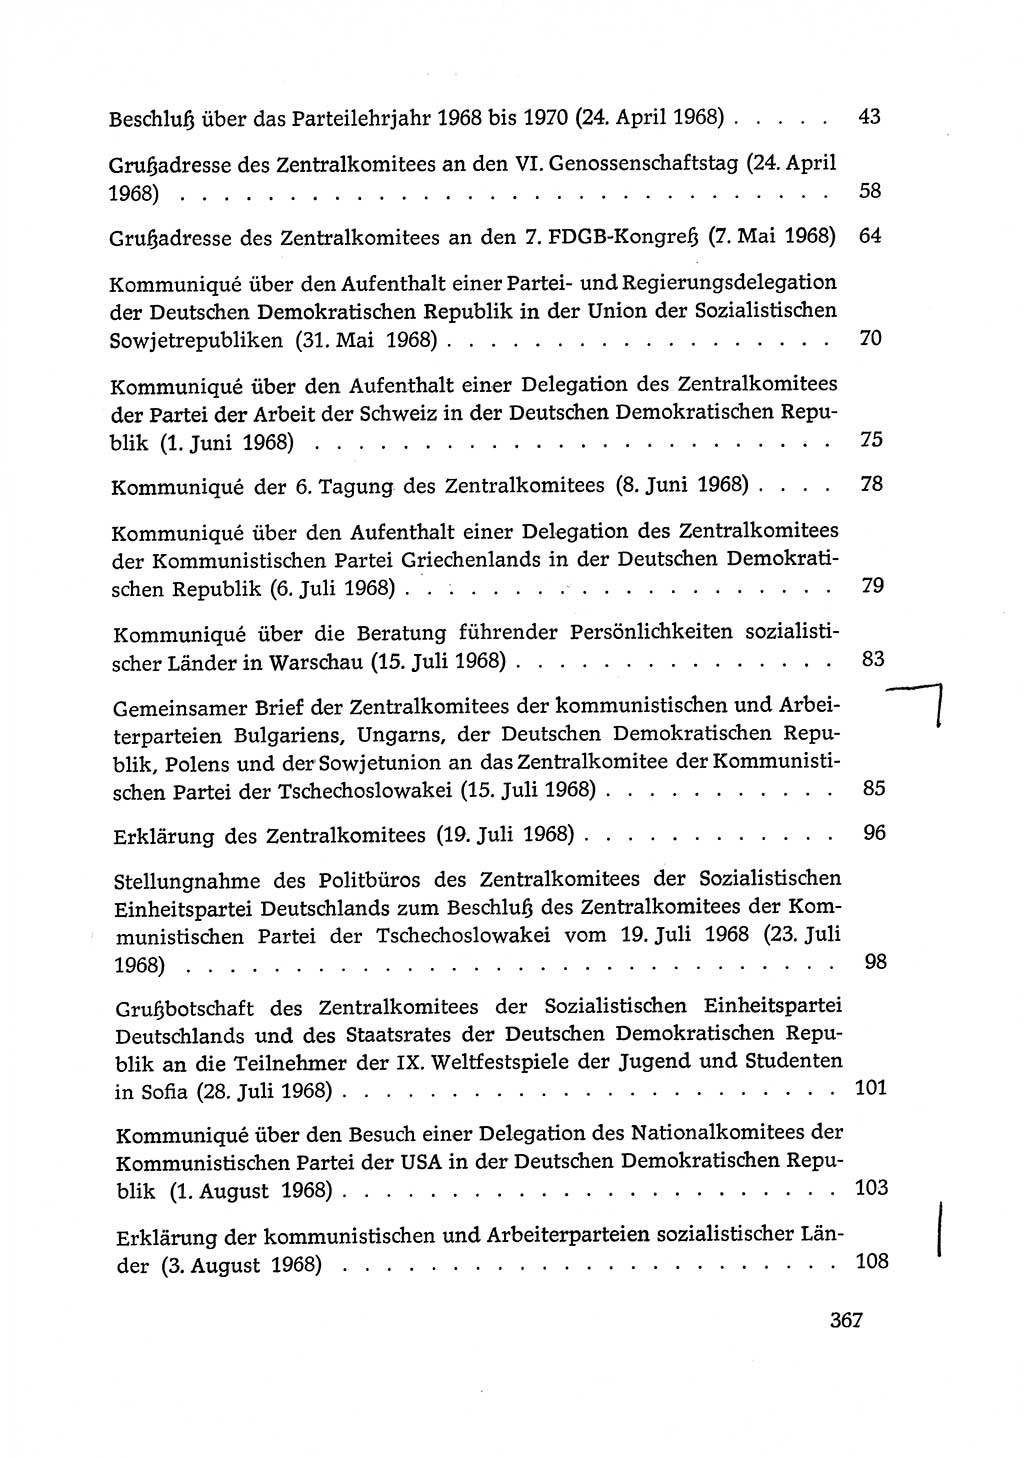 Dokumente der Sozialistischen Einheitspartei Deutschlands (SED) [Deutsche Demokratische Republik (DDR)] 1968-1969, Seite 367 (Dok. SED DDR 1968-1969, S. 367)